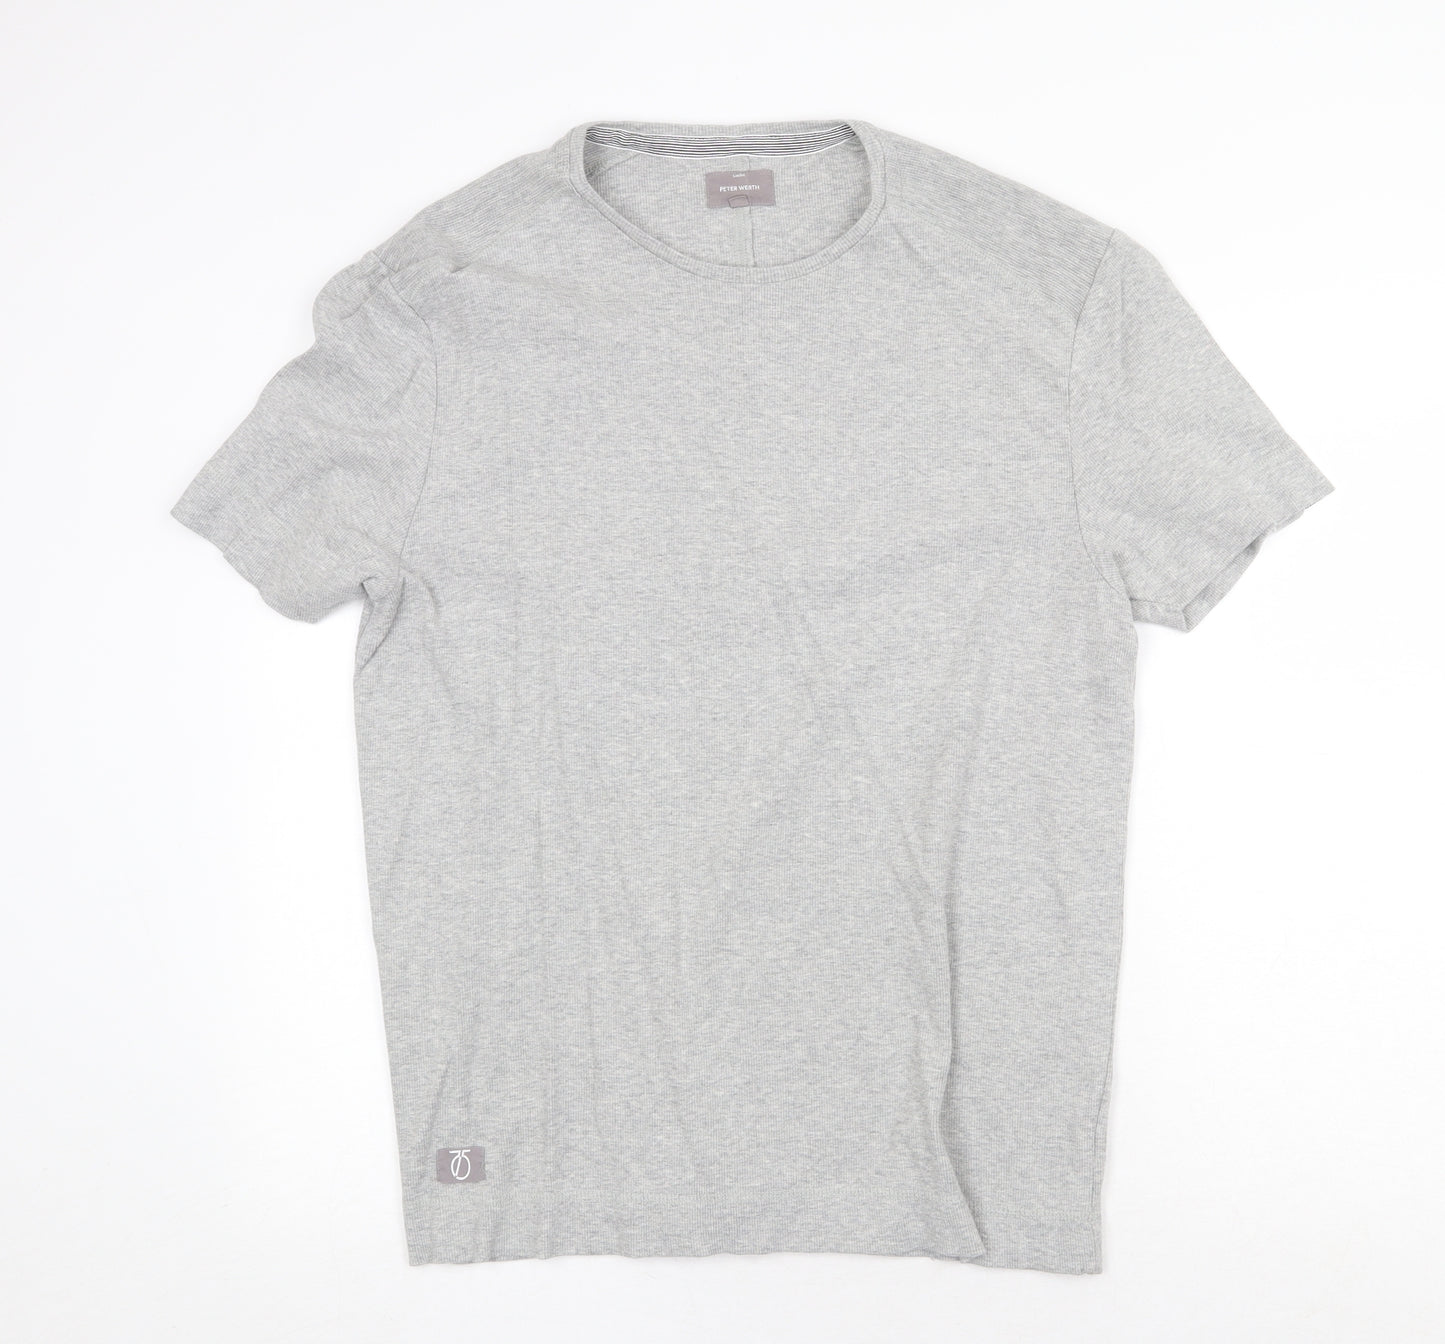 Peter Werth Mens Grey Cotton T-Shirt Size 2XL Round Neck Pullover